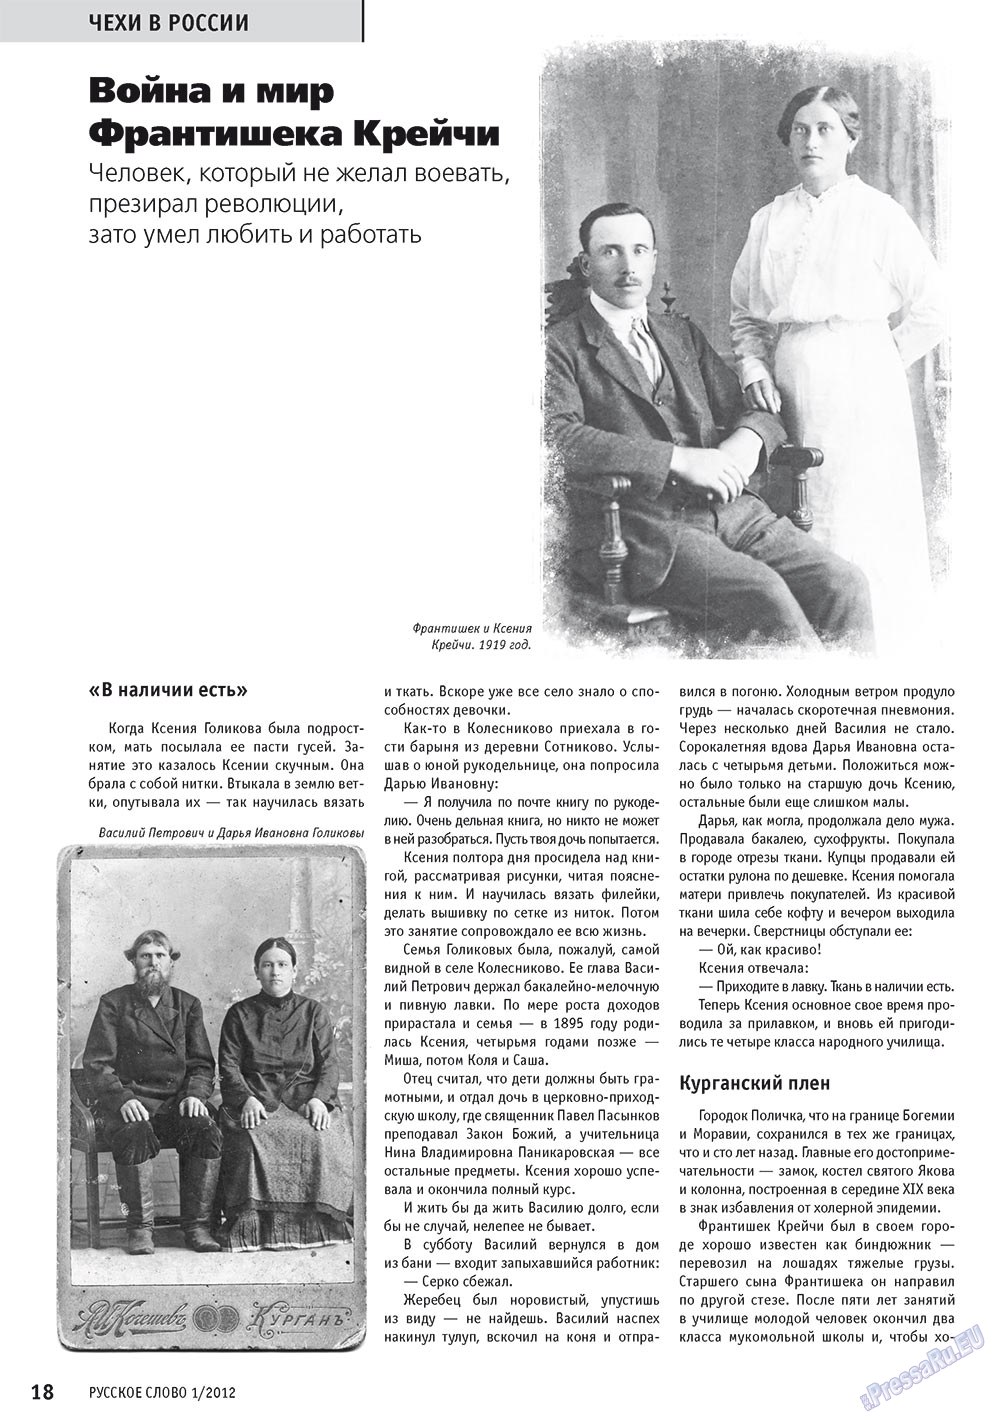 Русское слово, журнал. 2012 №1 стр.20